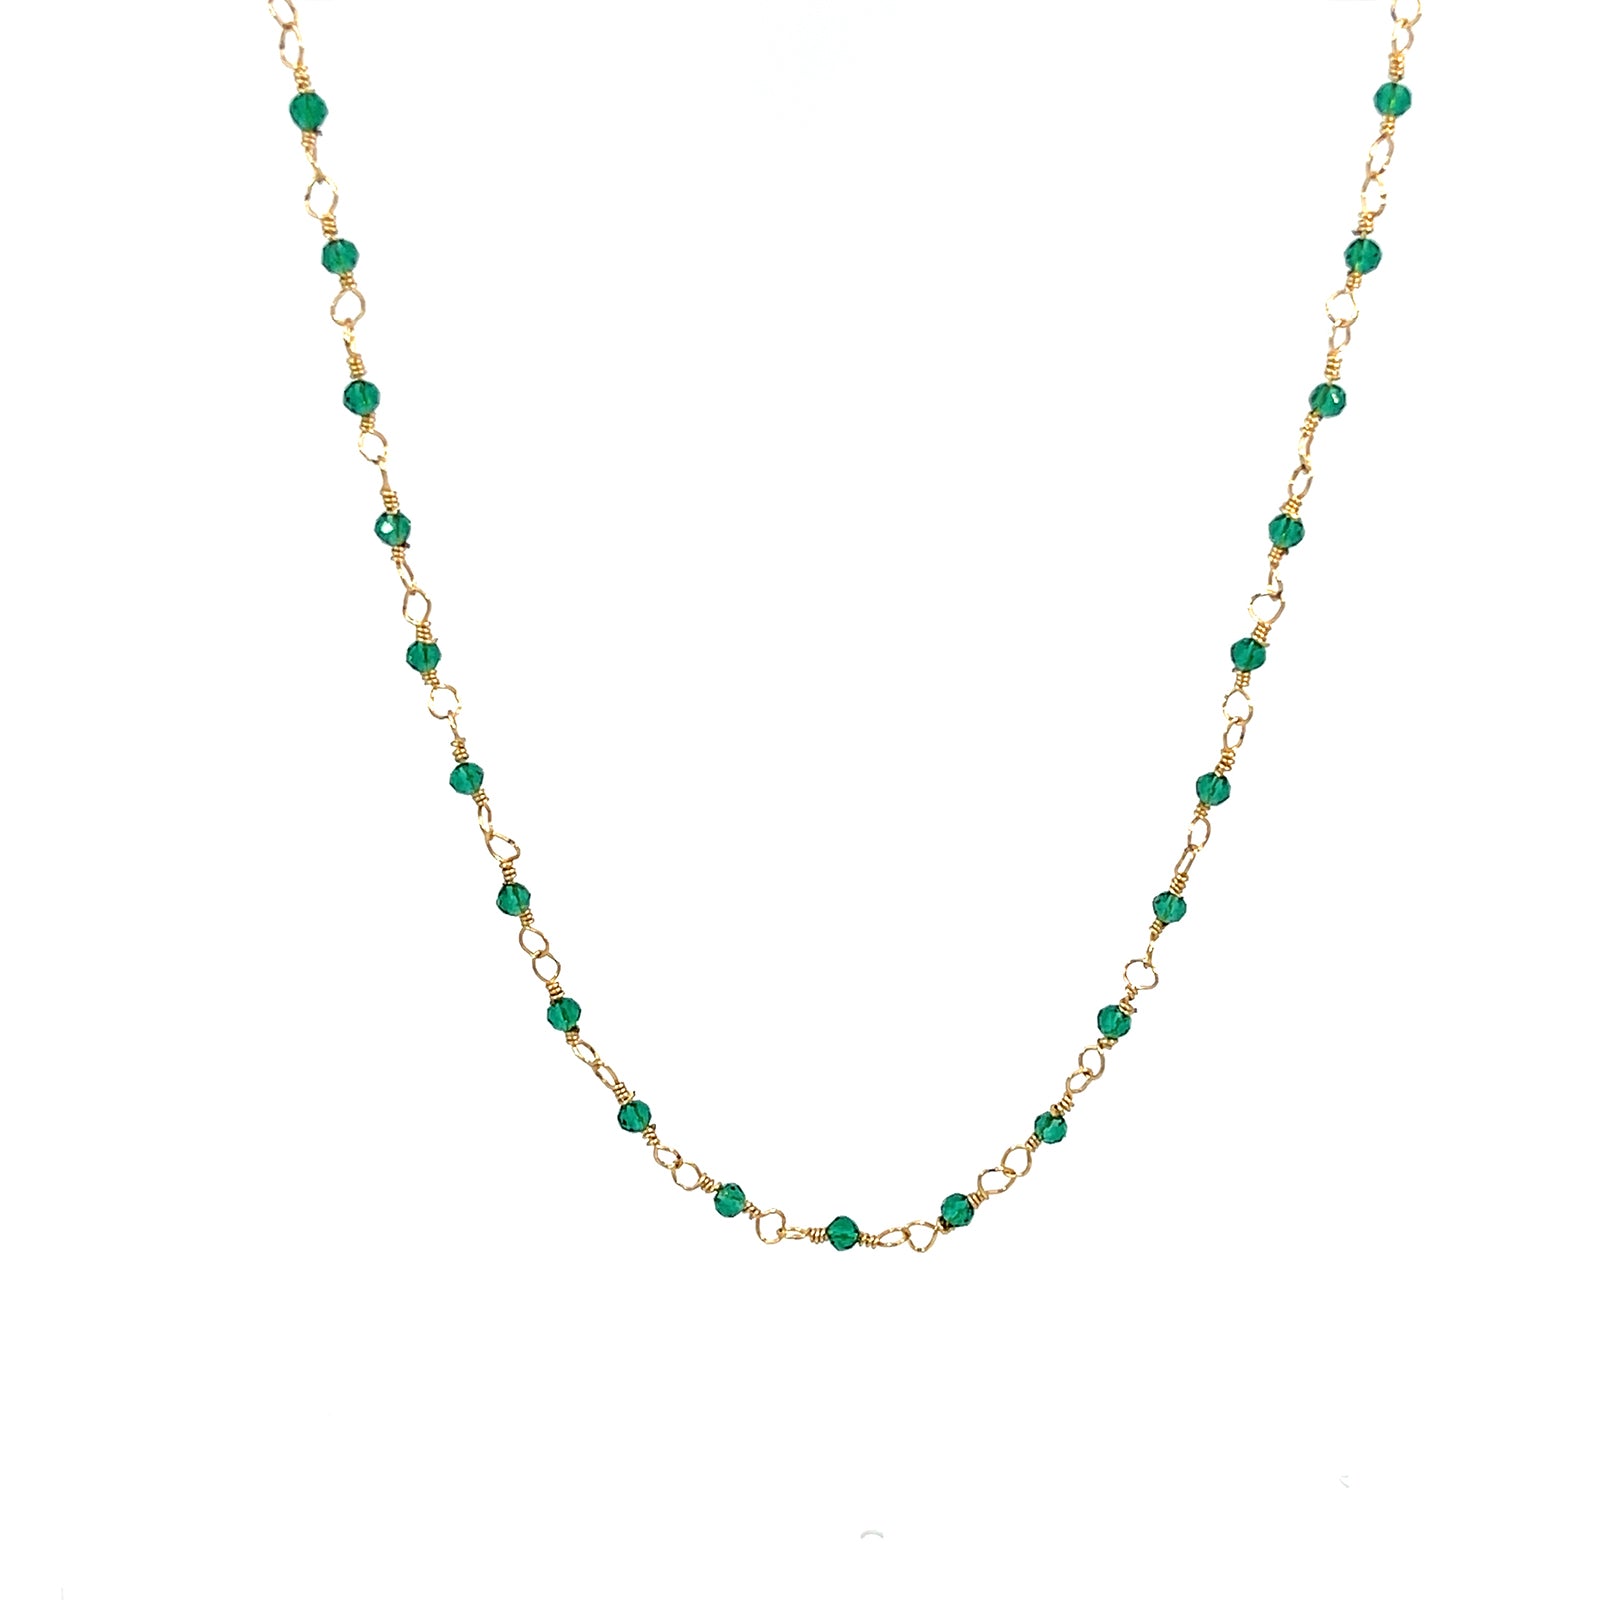 Gosia Orlowska's Stylish Chiyo Beaded Necklaces